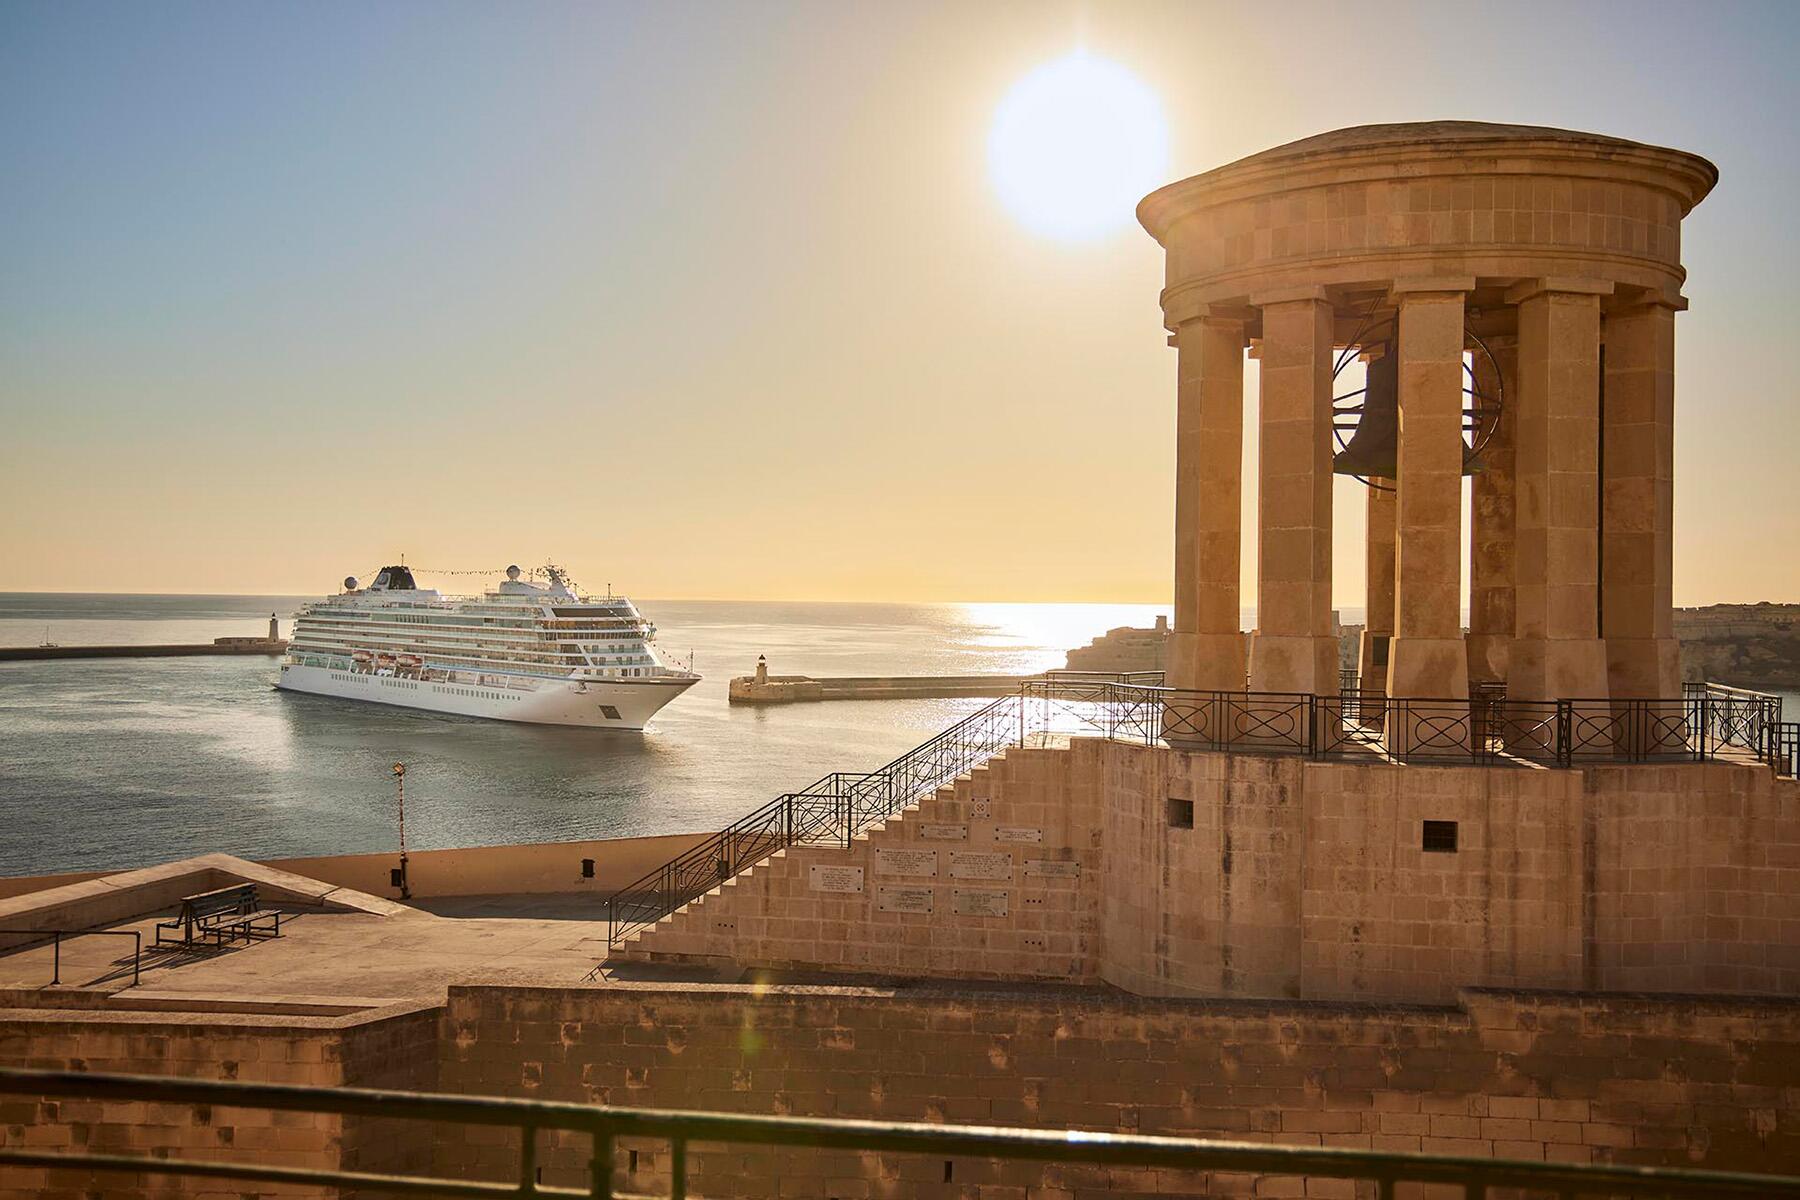 mediterranean cruise 2016